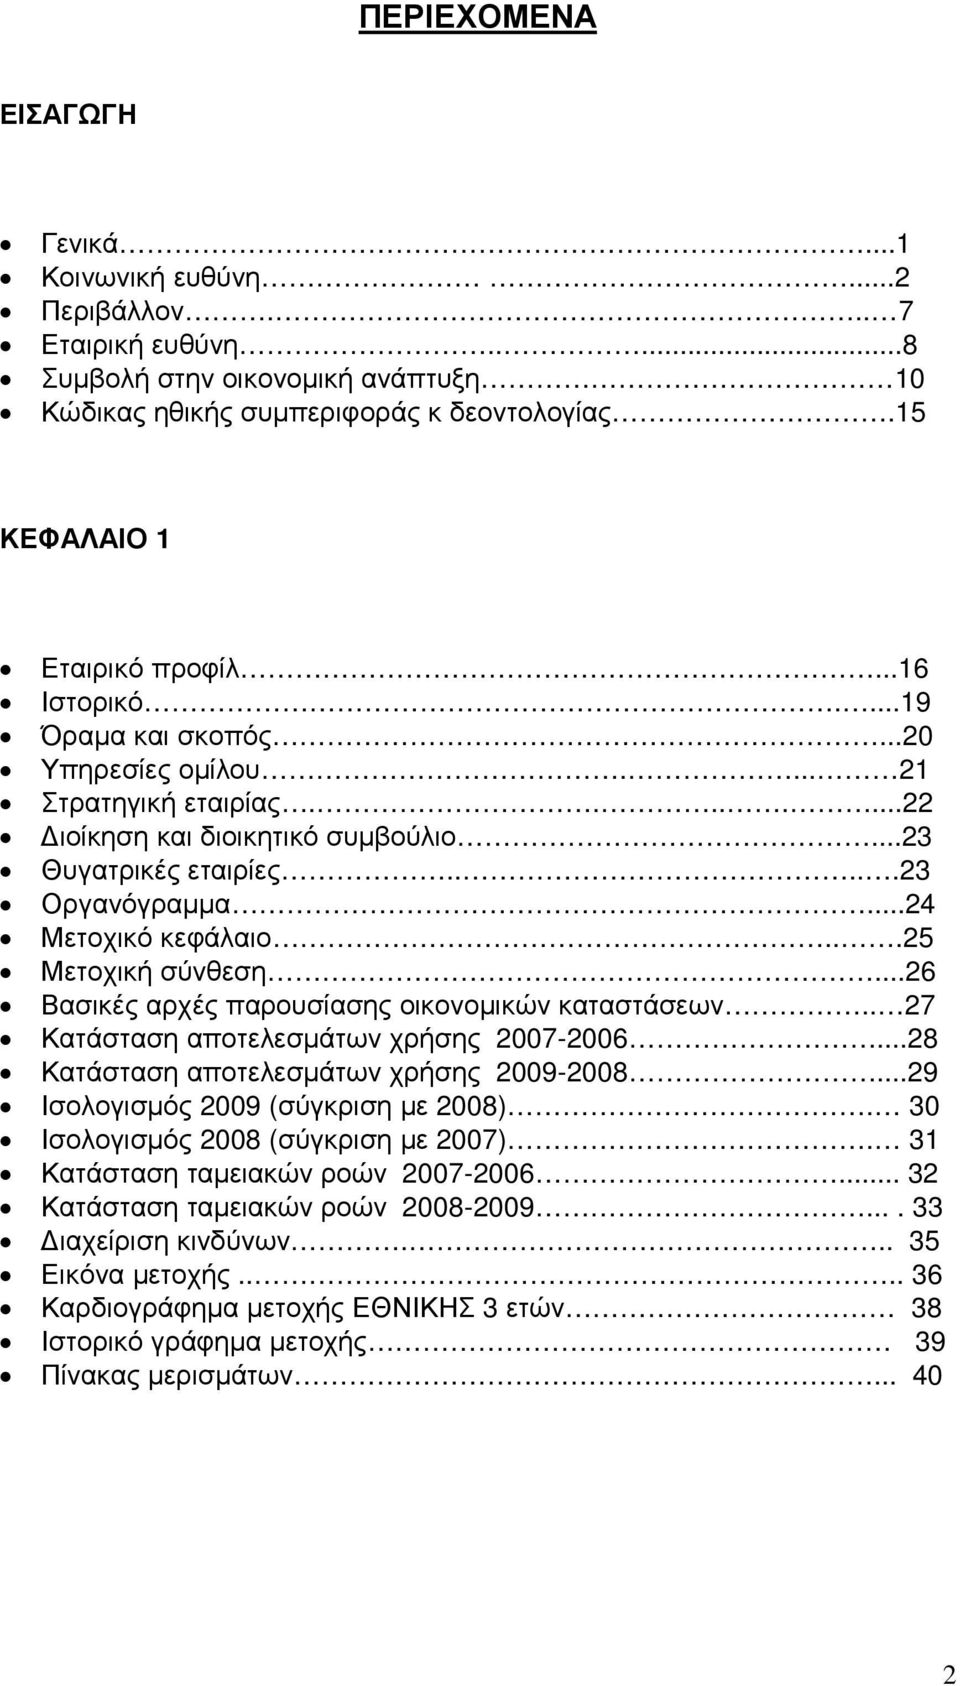 ..25 Μετοχική σύνθεση...26 Βασικές αρχές παρουσίασης οικονοµικών καταστάσεων.. 27 Κατάσταση αποτελεσµάτων χρήσης 2007-2006...28 Κατάσταση αποτελεσµάτων χρήσης 2009-2008.